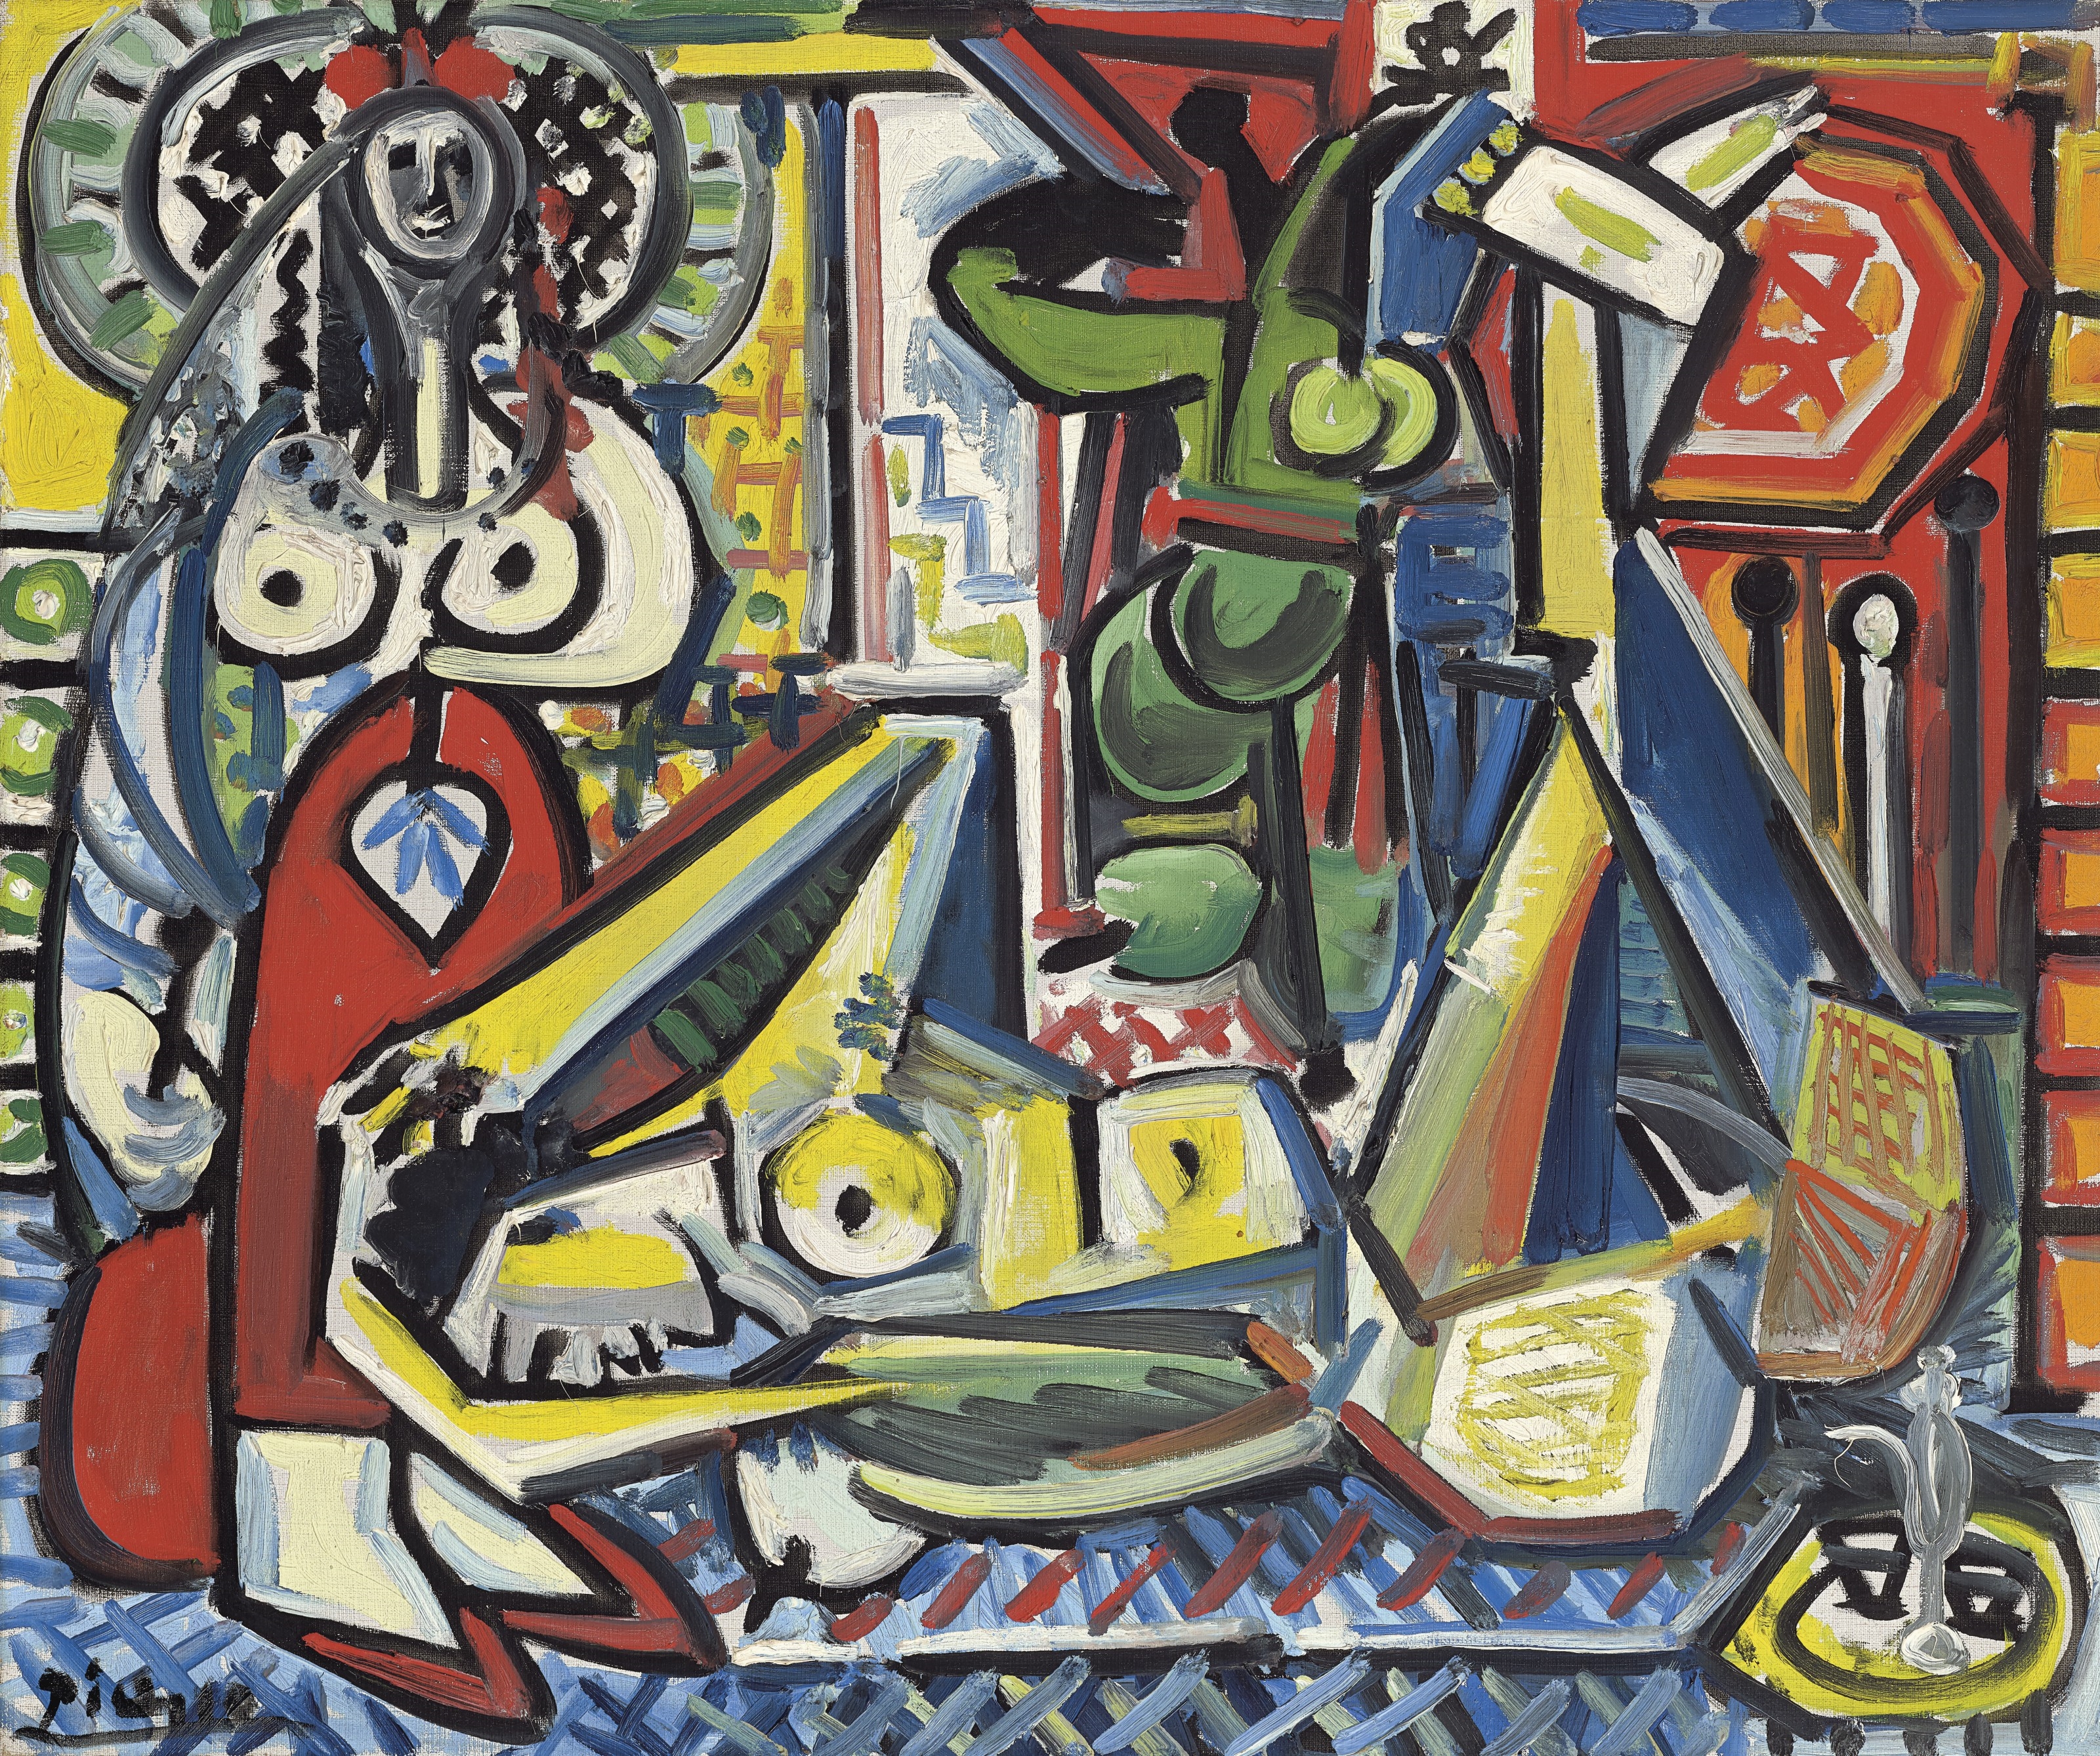 Les Femmes d'Alger (Version F) by Pablo Picasso, 1955